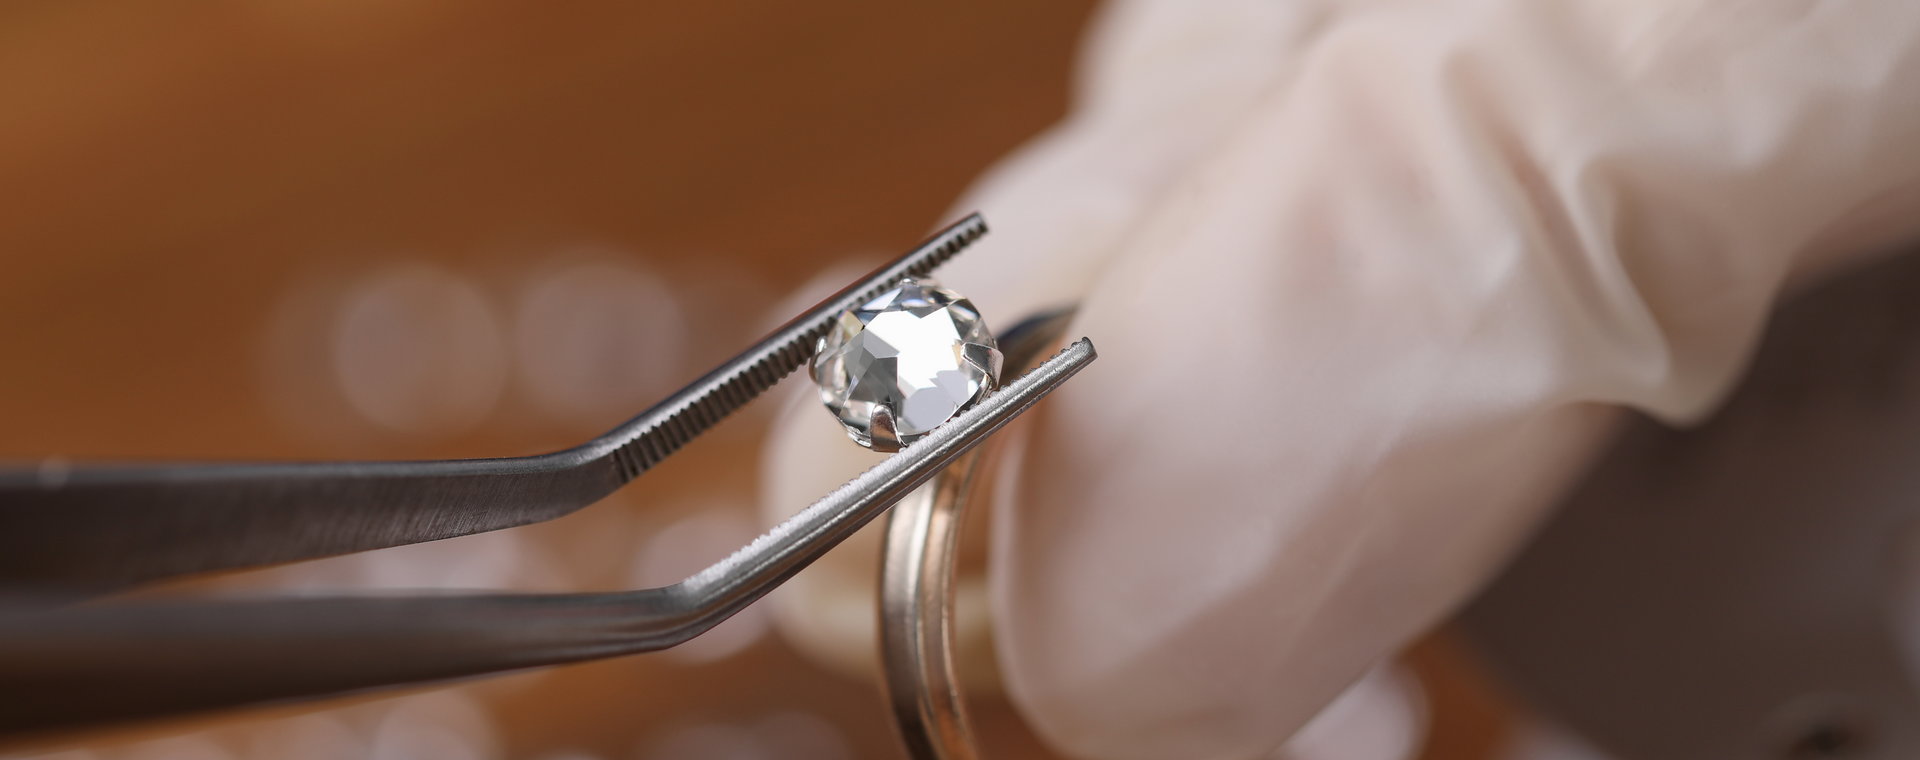 84 proc. wszystkich surowych diamentów na świecie jest przeładowywanych w Antwerpii